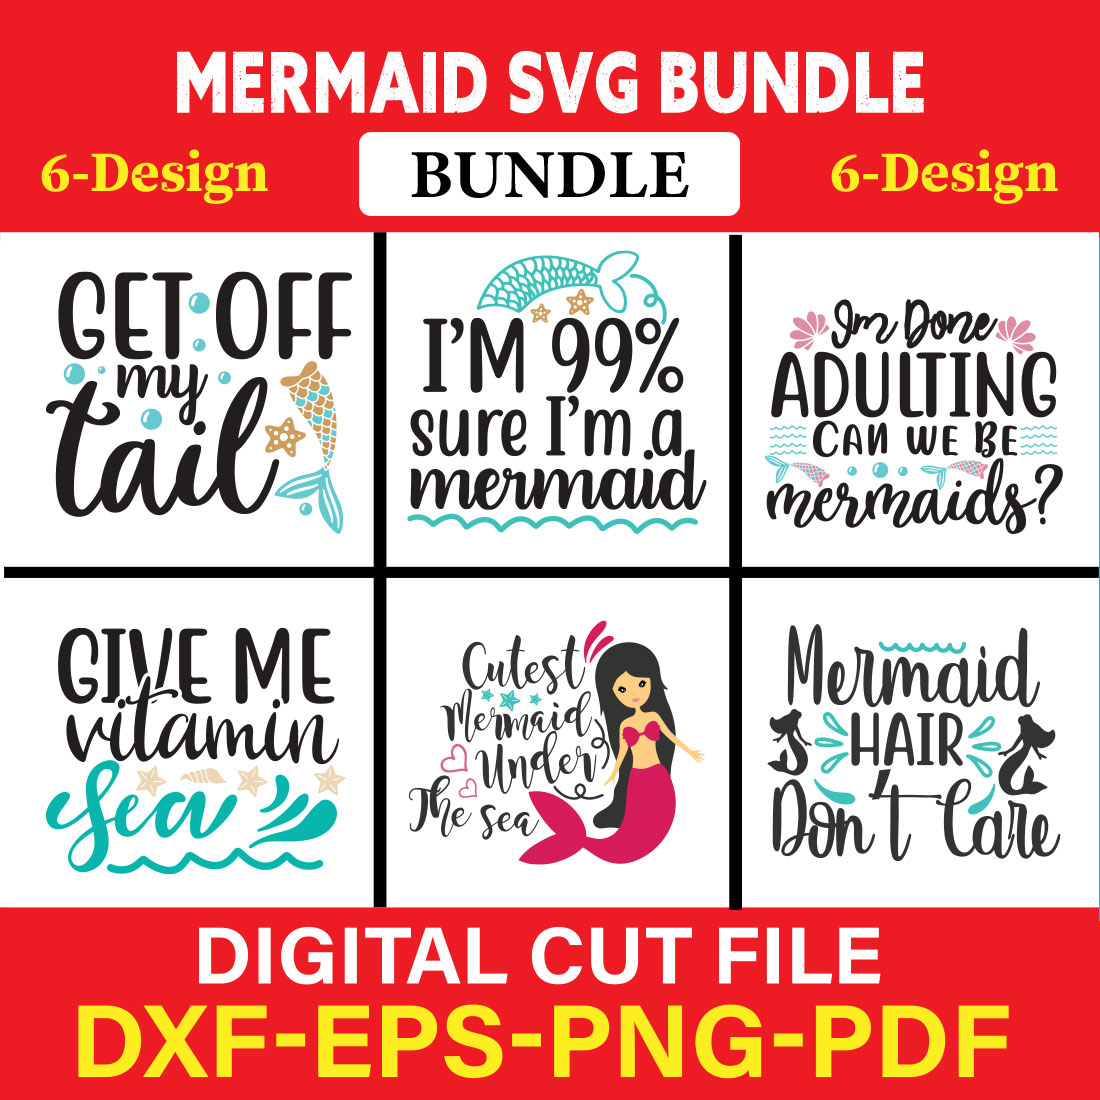 Mermaid T-shirt Design Bundle Vol-1 cover image.